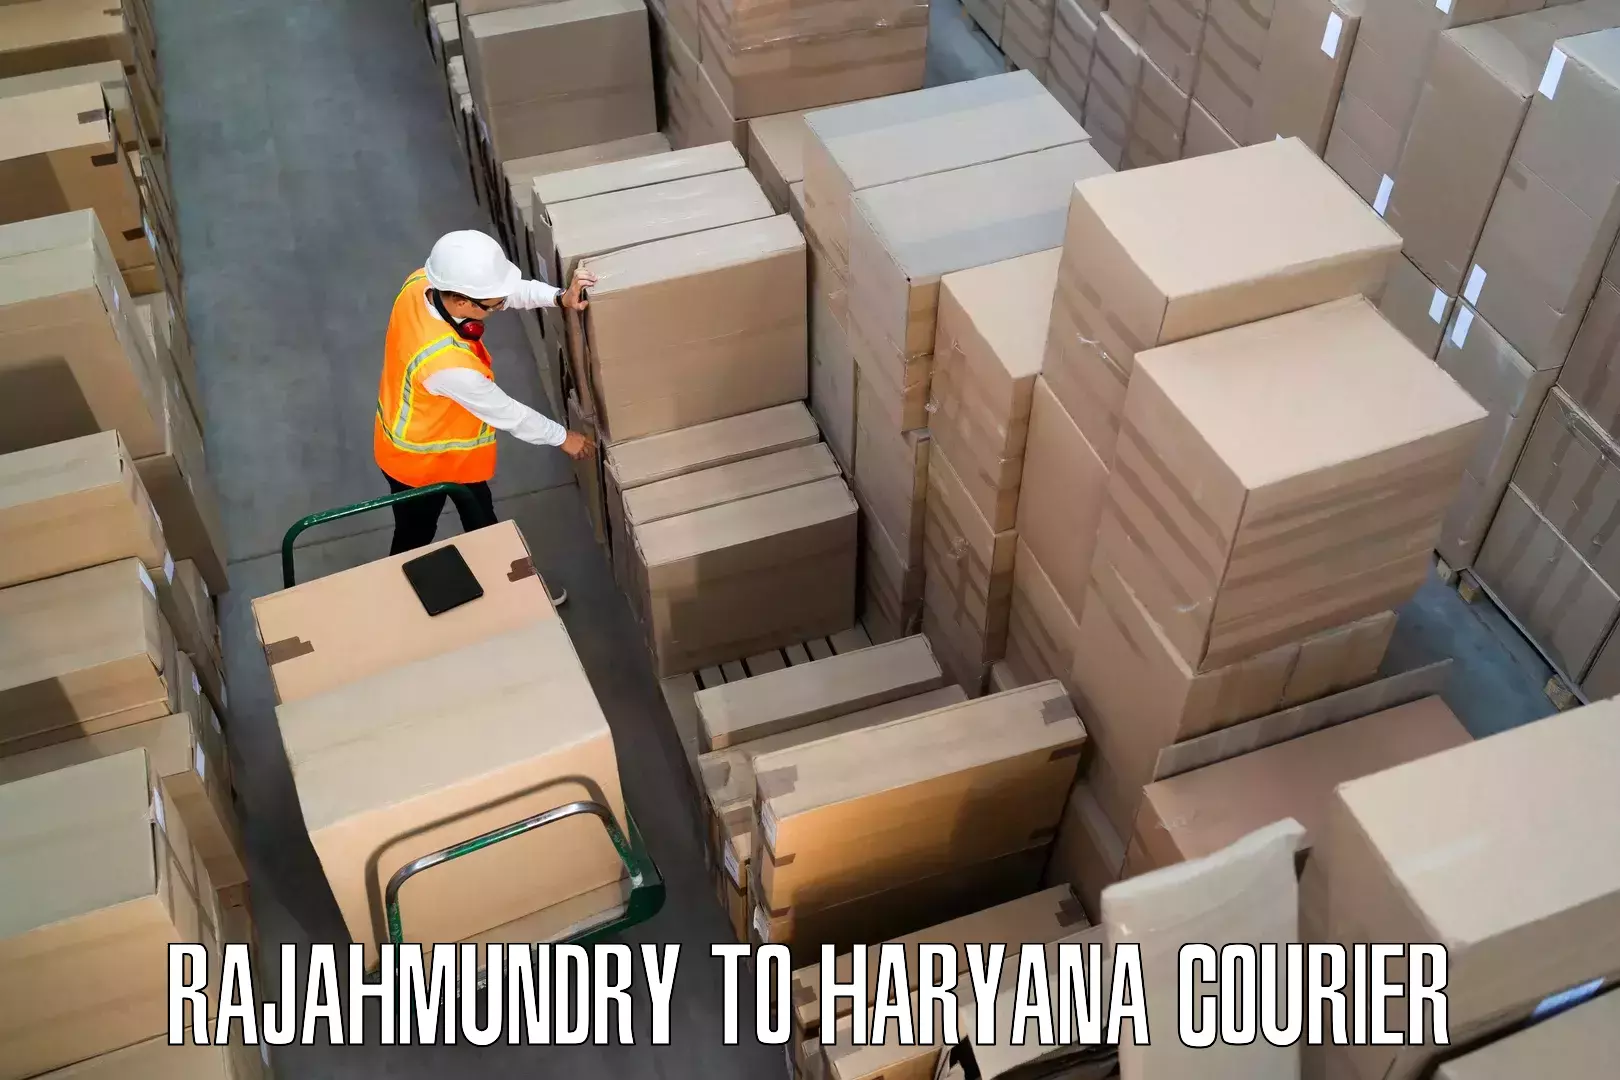 Home goods moving company Rajahmundry to Gohana